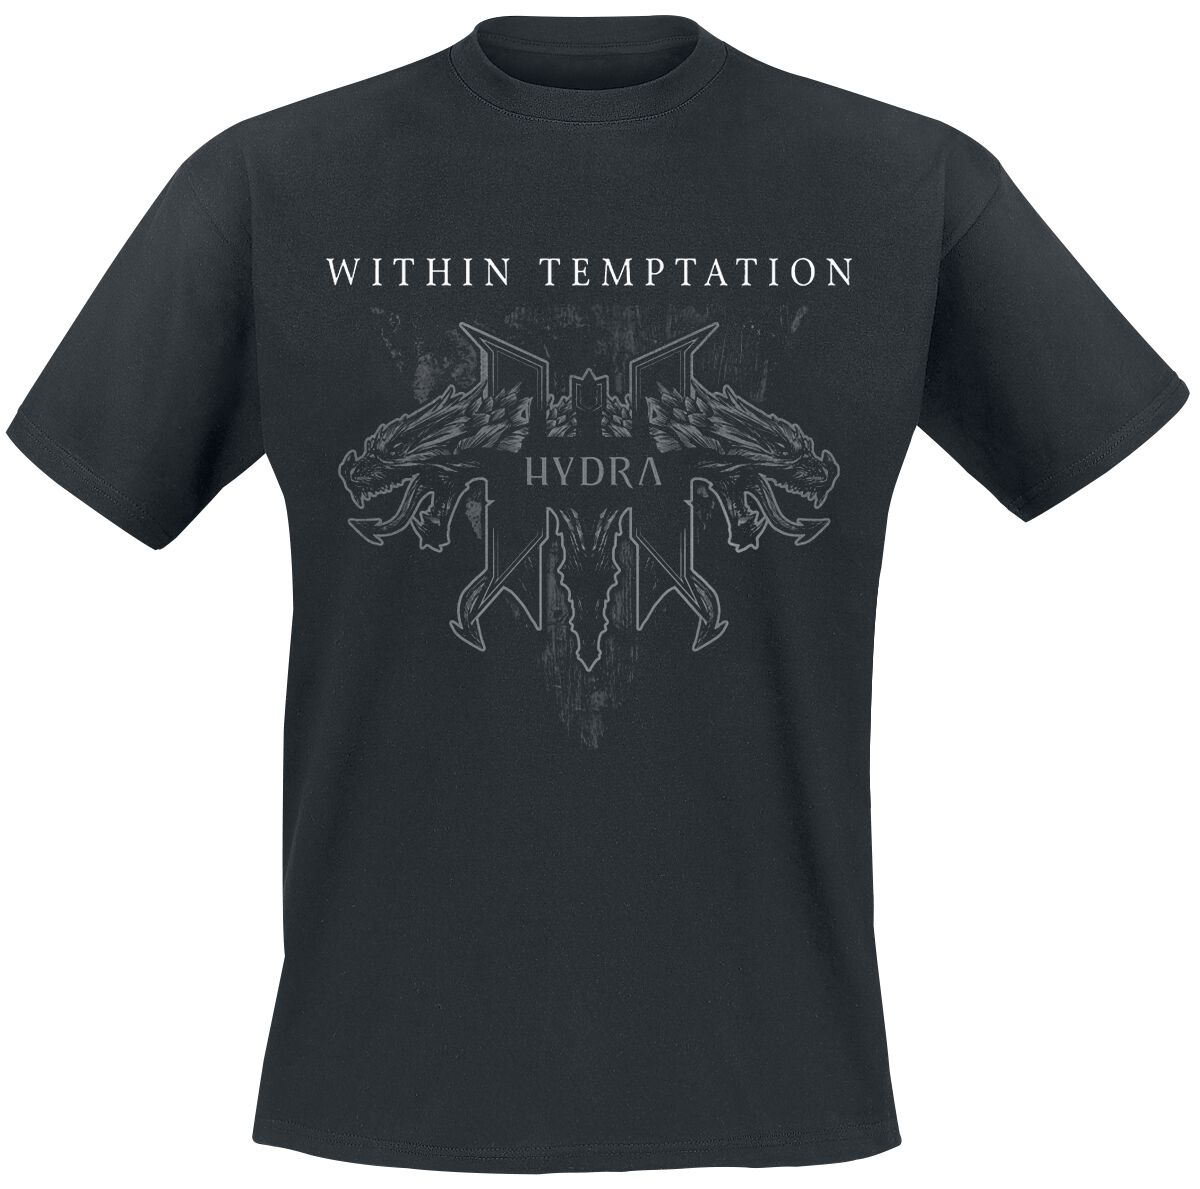 Within Temptation T-Shirt - Hydra Tracks - S bis XXL - für Männer - Größe M - schwarz  - Lizenziertes Merchandise!